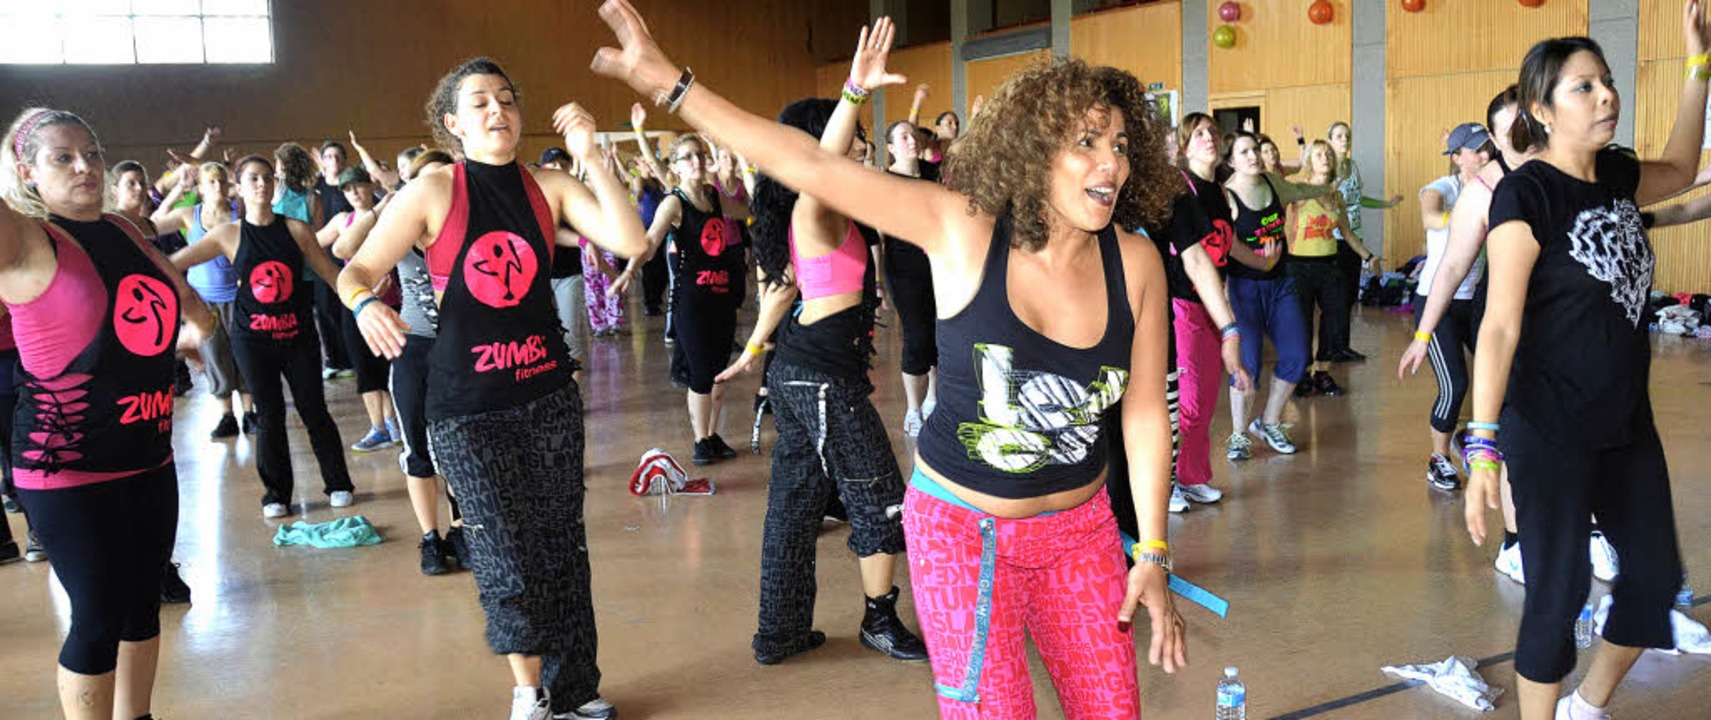 Zu feurigen Latino-Rhythmen bewegten s...umba-Marathons in der Wiesentalhalle.   | Foto: Silke Hartenstein